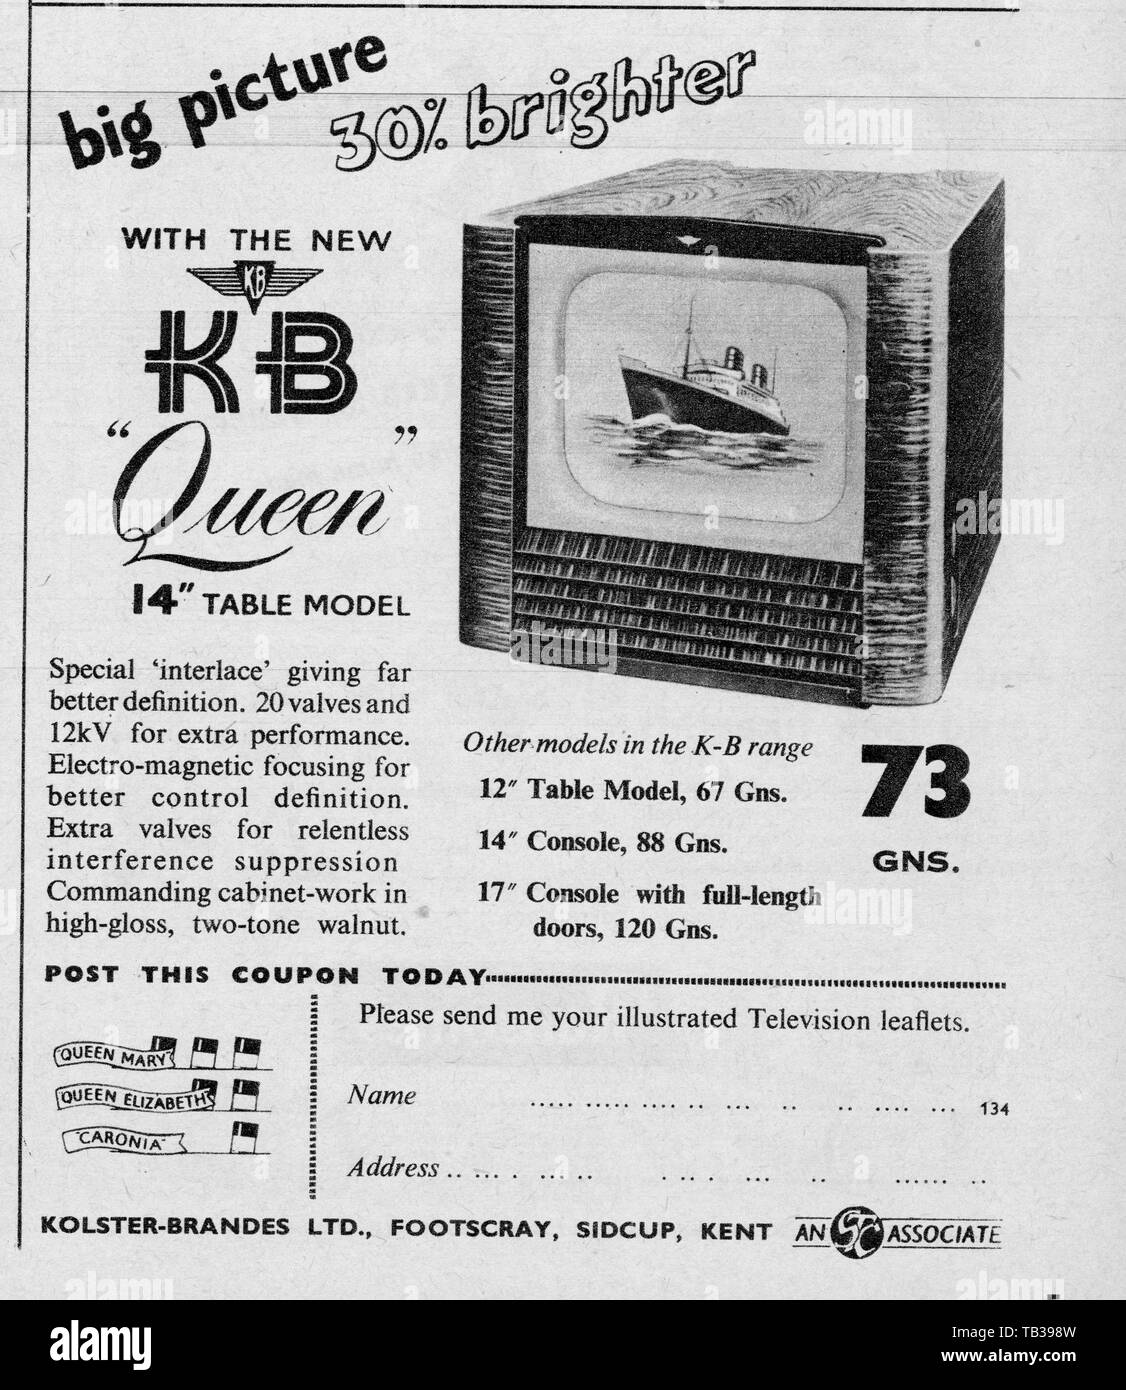 KB Königin Fernseher 14' Tisch Modell 73 Guineen Anzeige 4 April 1953 Foto von Tony Henshaw Stockfoto